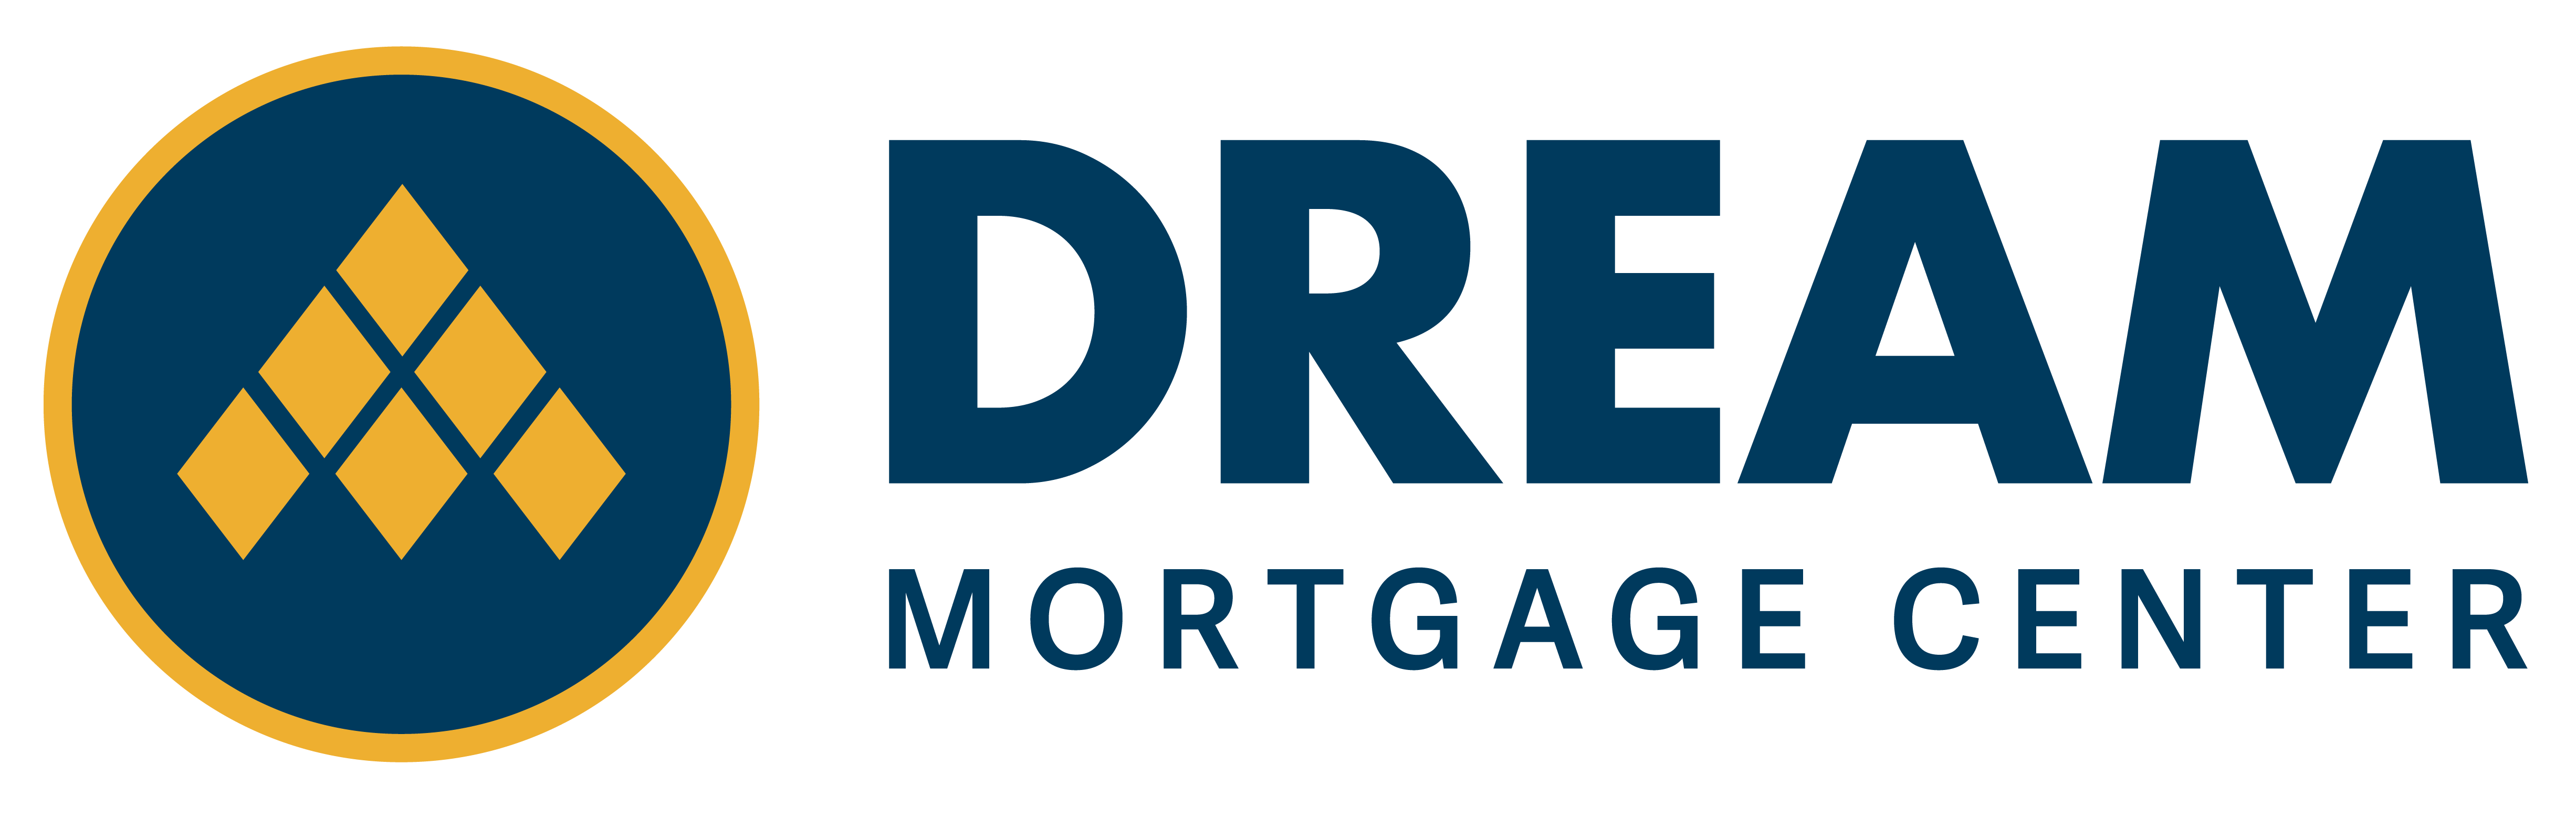 Dream Mortgage Center logo.